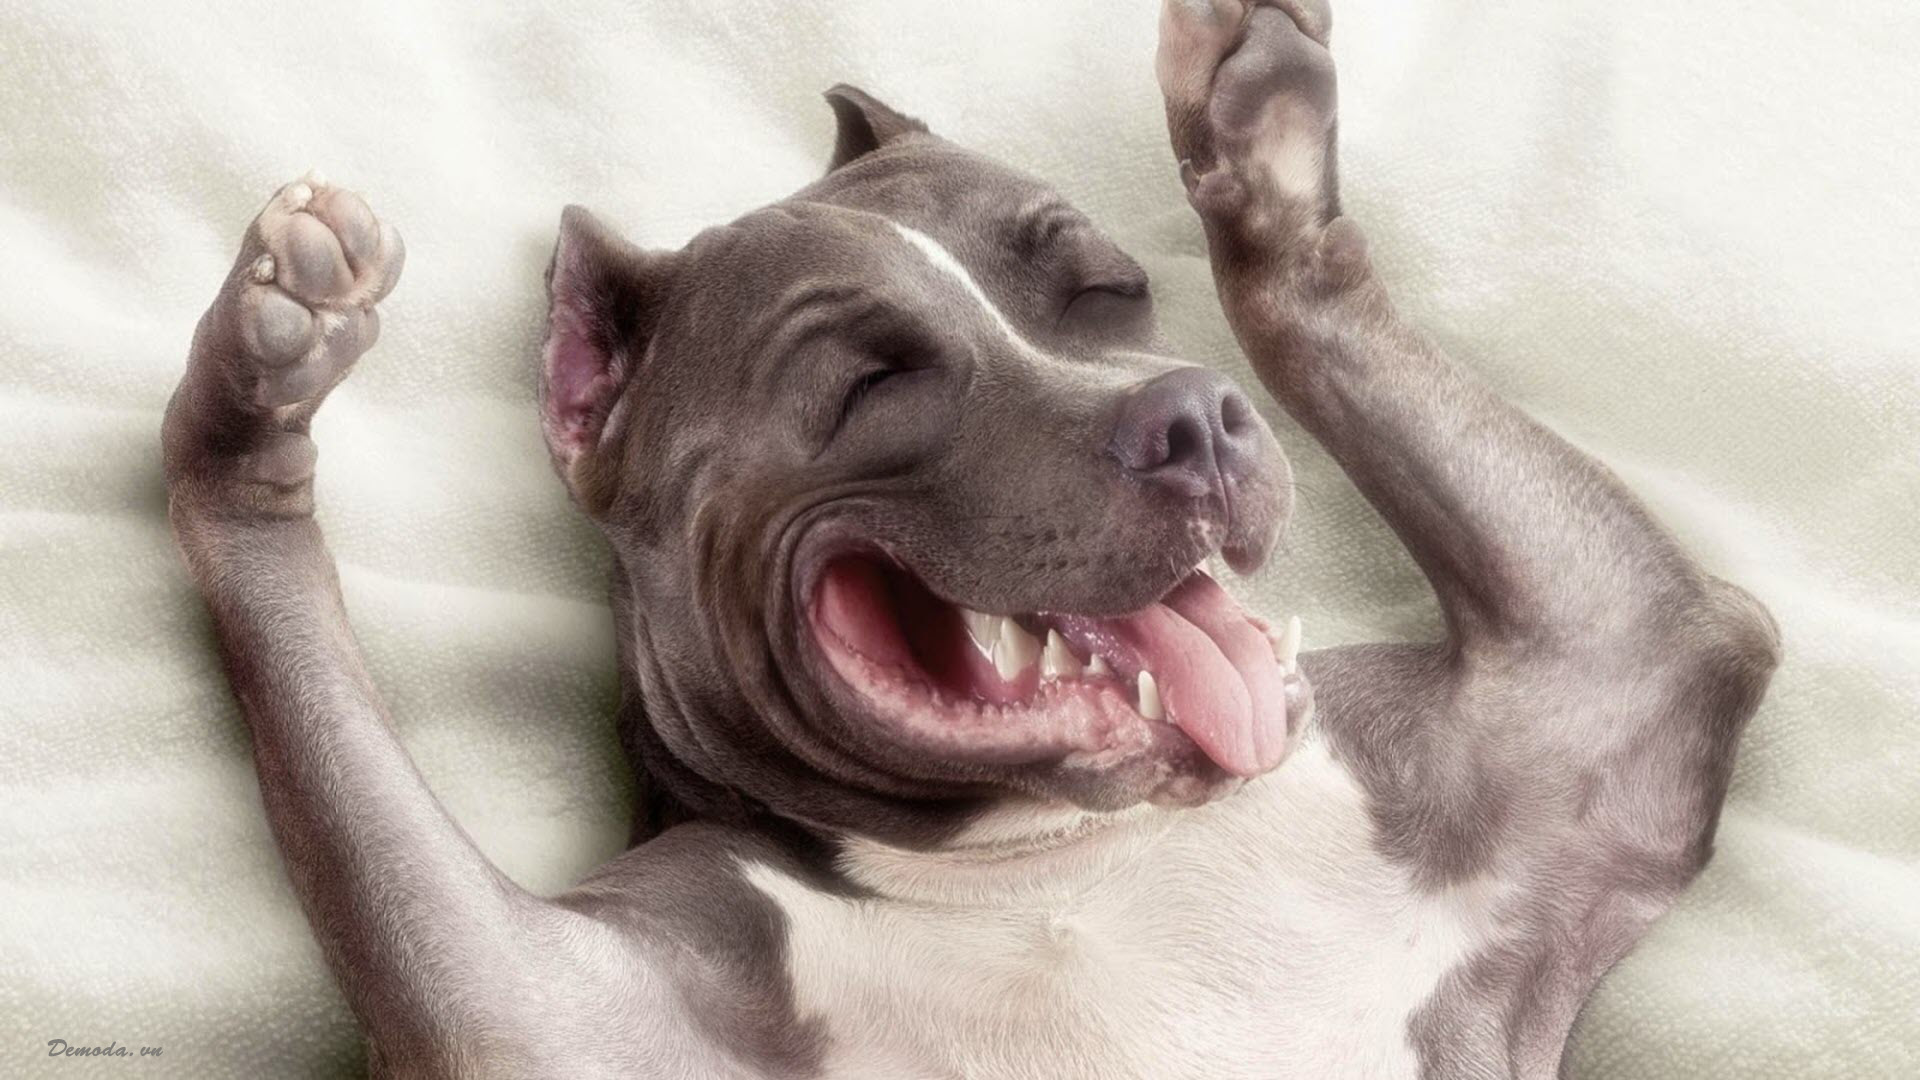 Chó hài hước là một chủ đề thường xuyên được nhắc đến trong các bức ảnh trên mạng. Hãy cùng chiêm ngưỡng những tấm ảnh đáng yêu của các chú chó tinh nghịch và hài hước trong tình huống khác nhau. Một trải nghiệm thú vị đang đợi bạn đó!